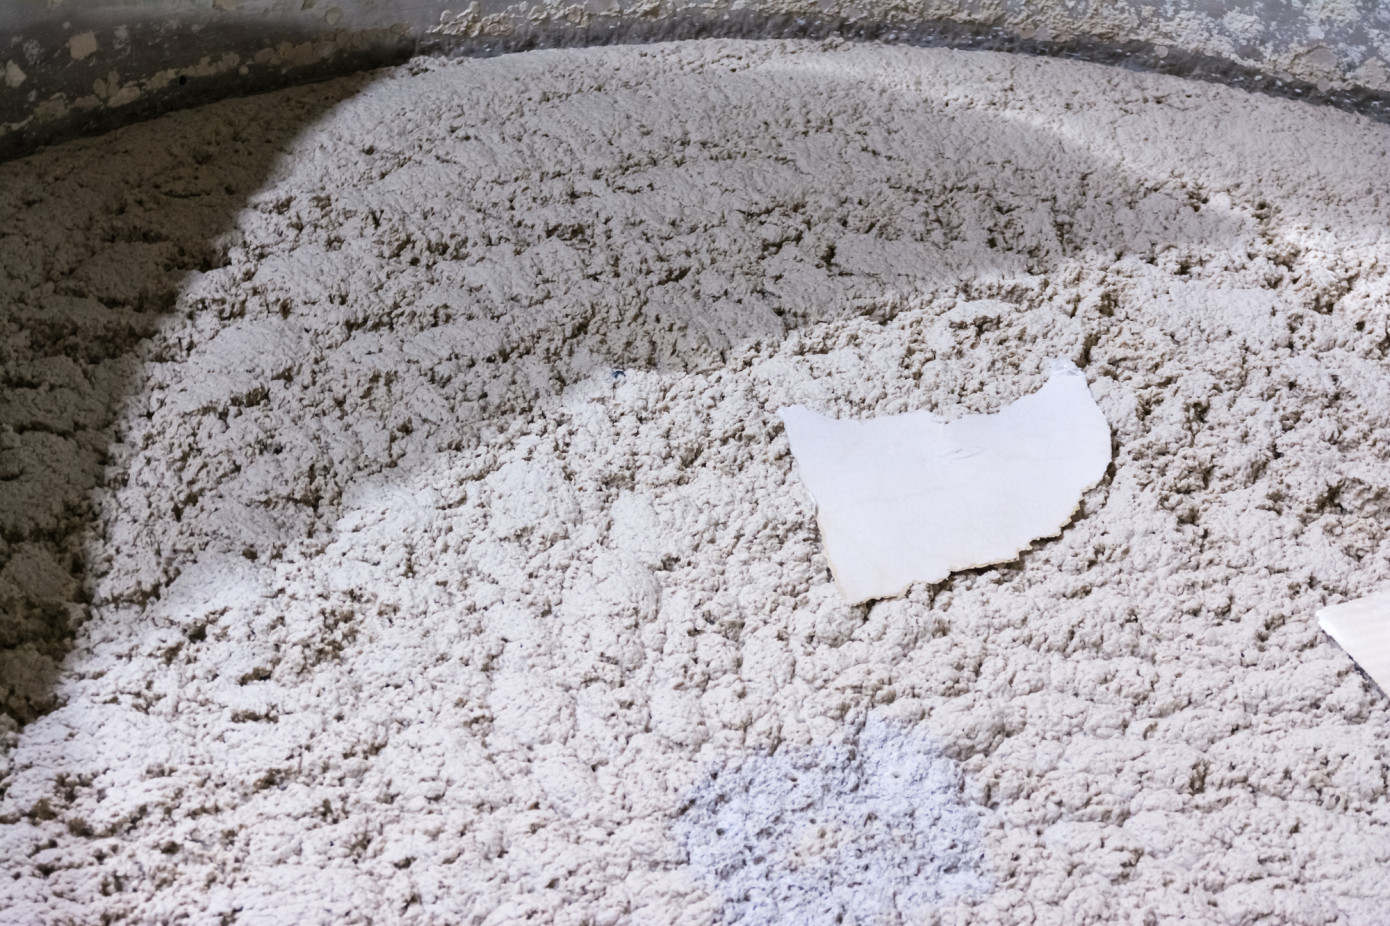 Стоимость на импортную сульфатную беленую целлюлозу в Китае упала на 0,4% 